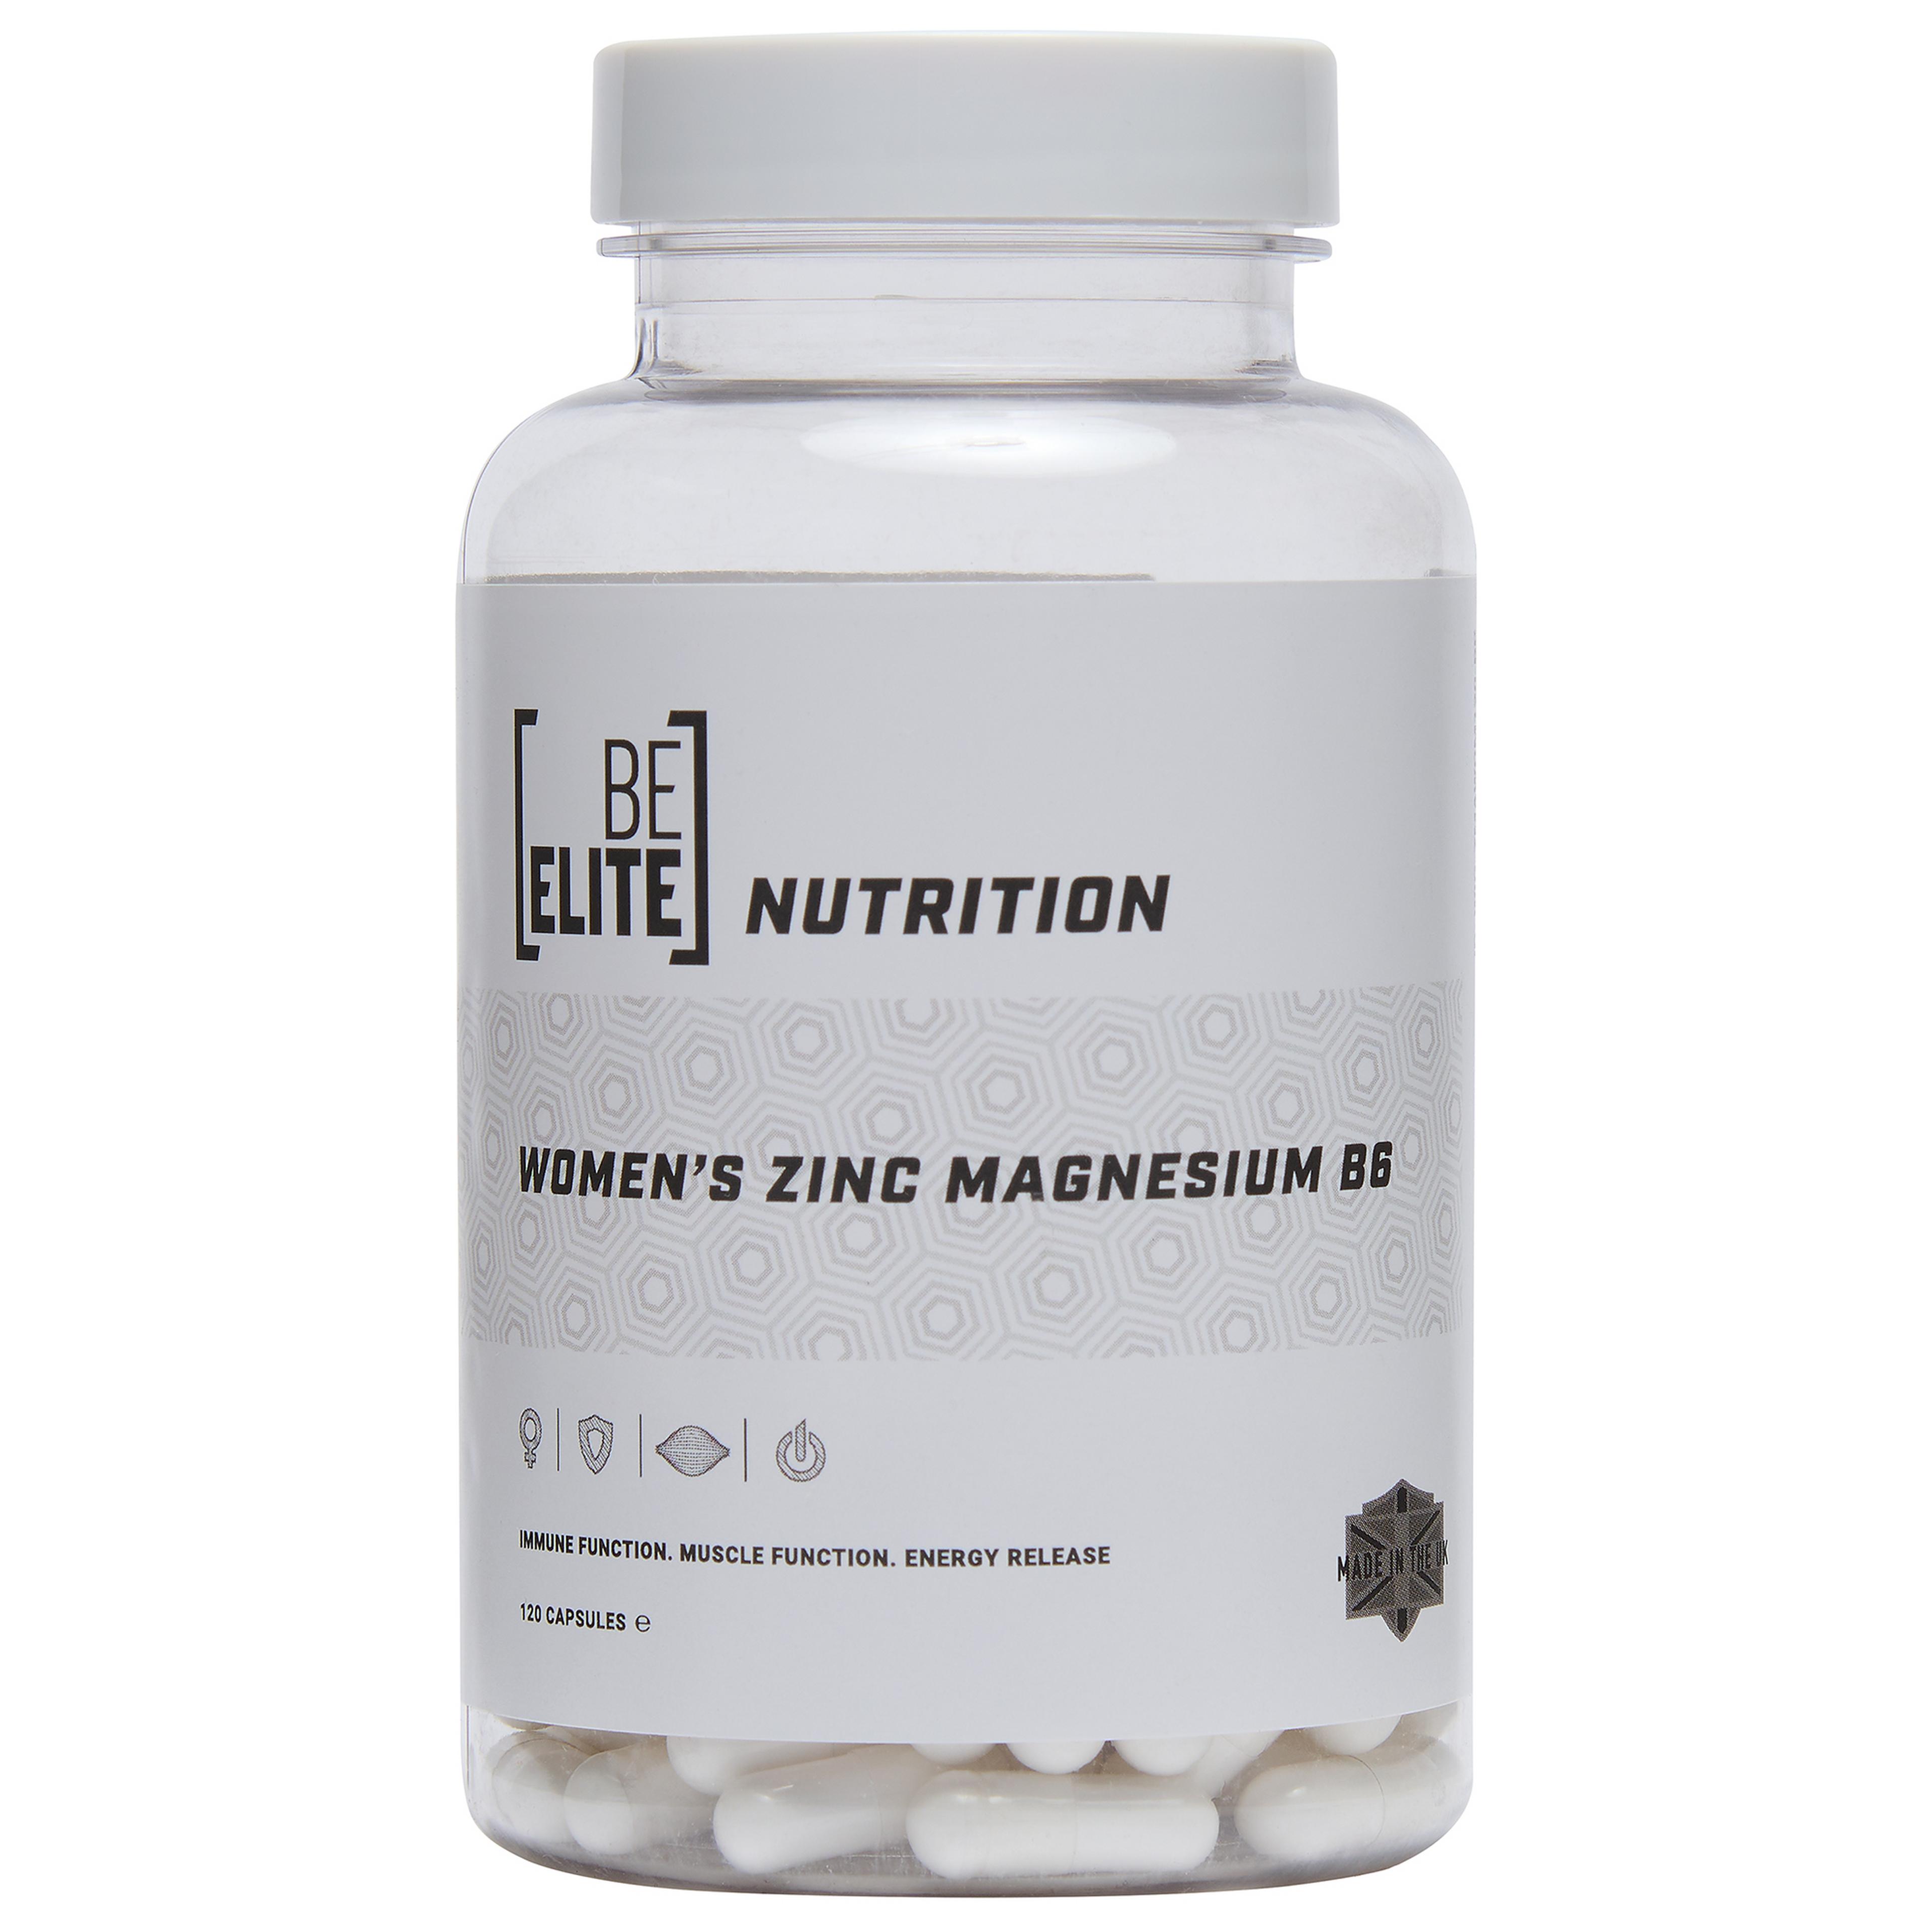  Women's Zinc Magnesium B6 (120 capsules)